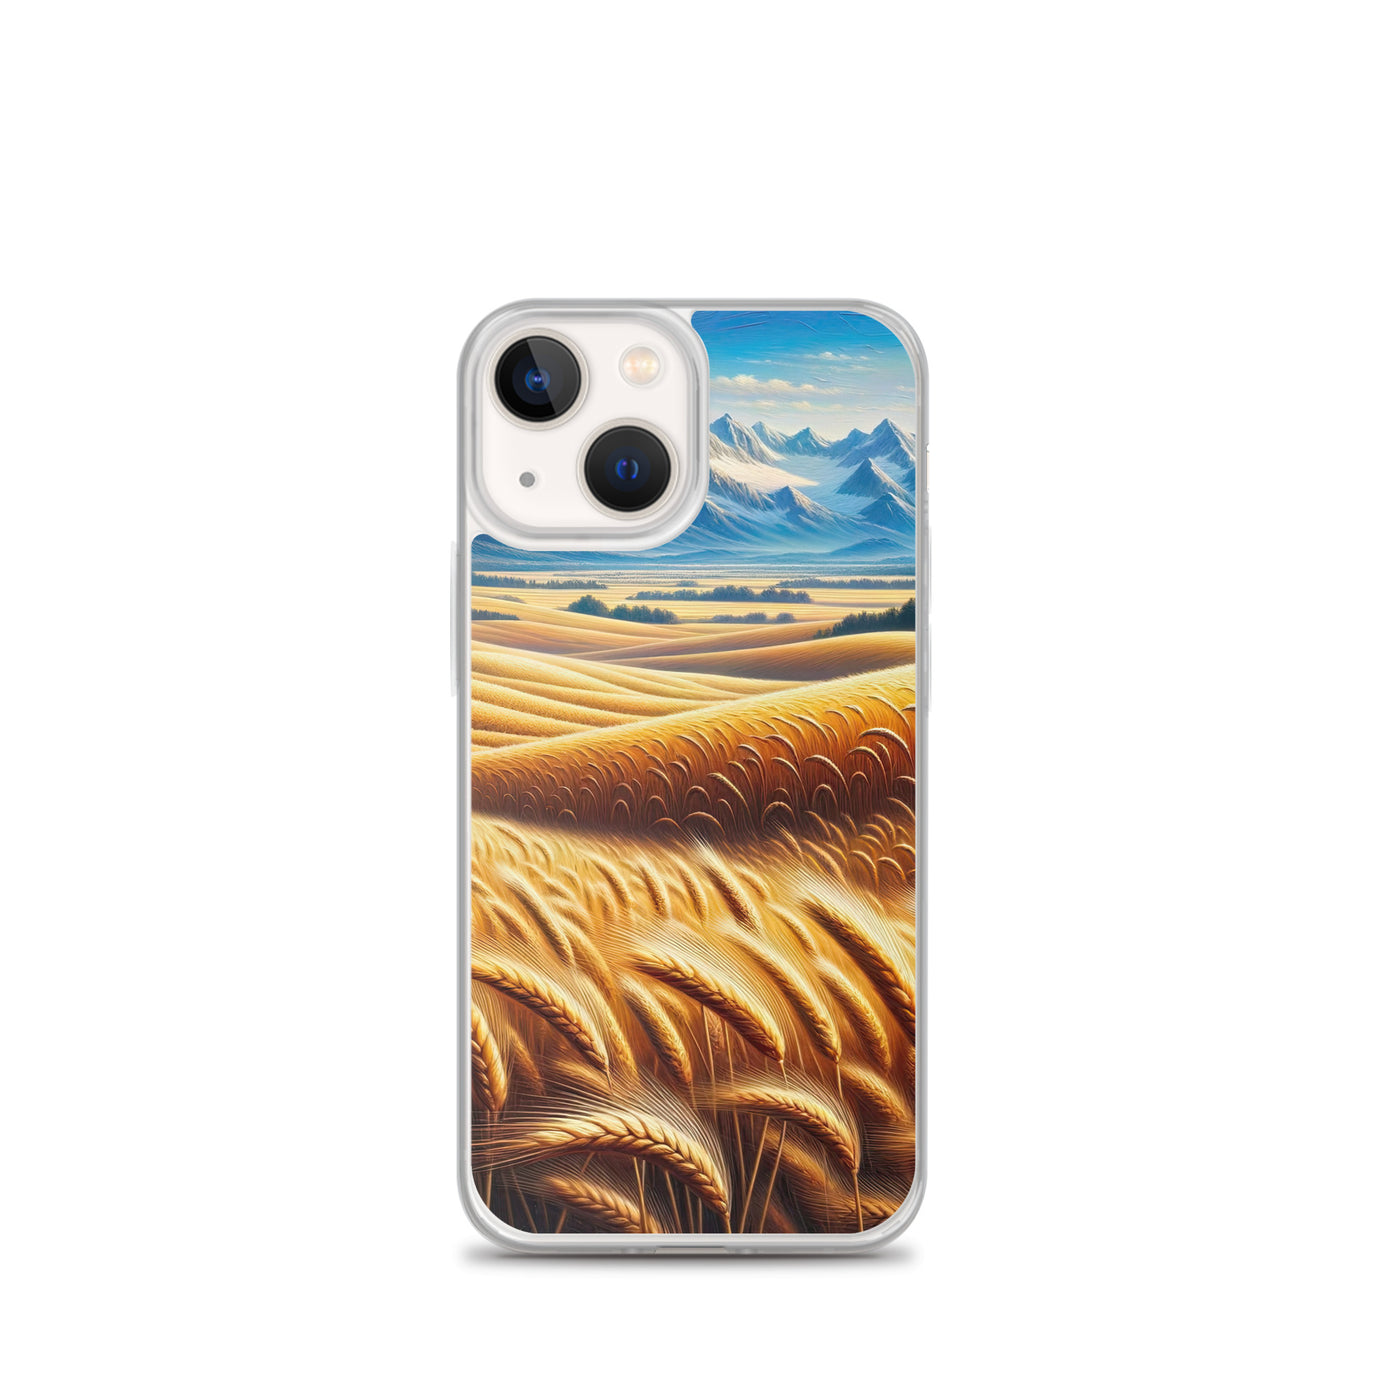 Ölgemälde eines weiten bayerischen Weizenfeldes, golden im Wind (TR) - iPhone Schutzhülle (durchsichtig) xxx yyy zzz iPhone 13 mini